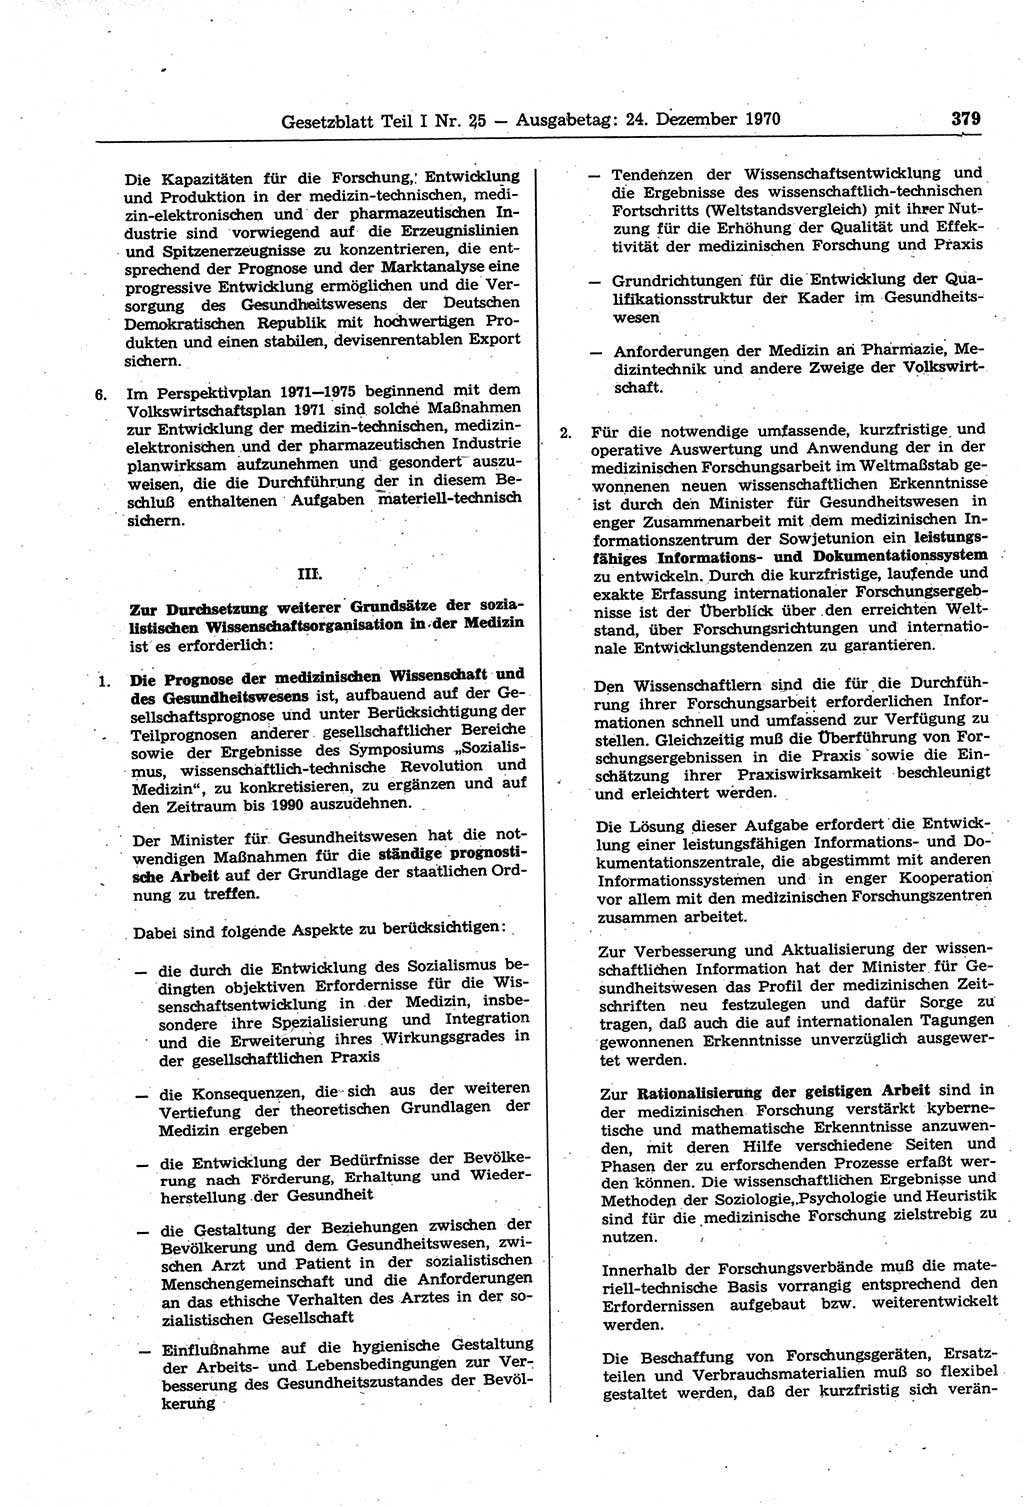 Gesetzblatt (GBl.) der Deutschen Demokratischen Republik (DDR) Teil Ⅰ 1970, Seite 379 (GBl. DDR Ⅰ 1970, S. 379)